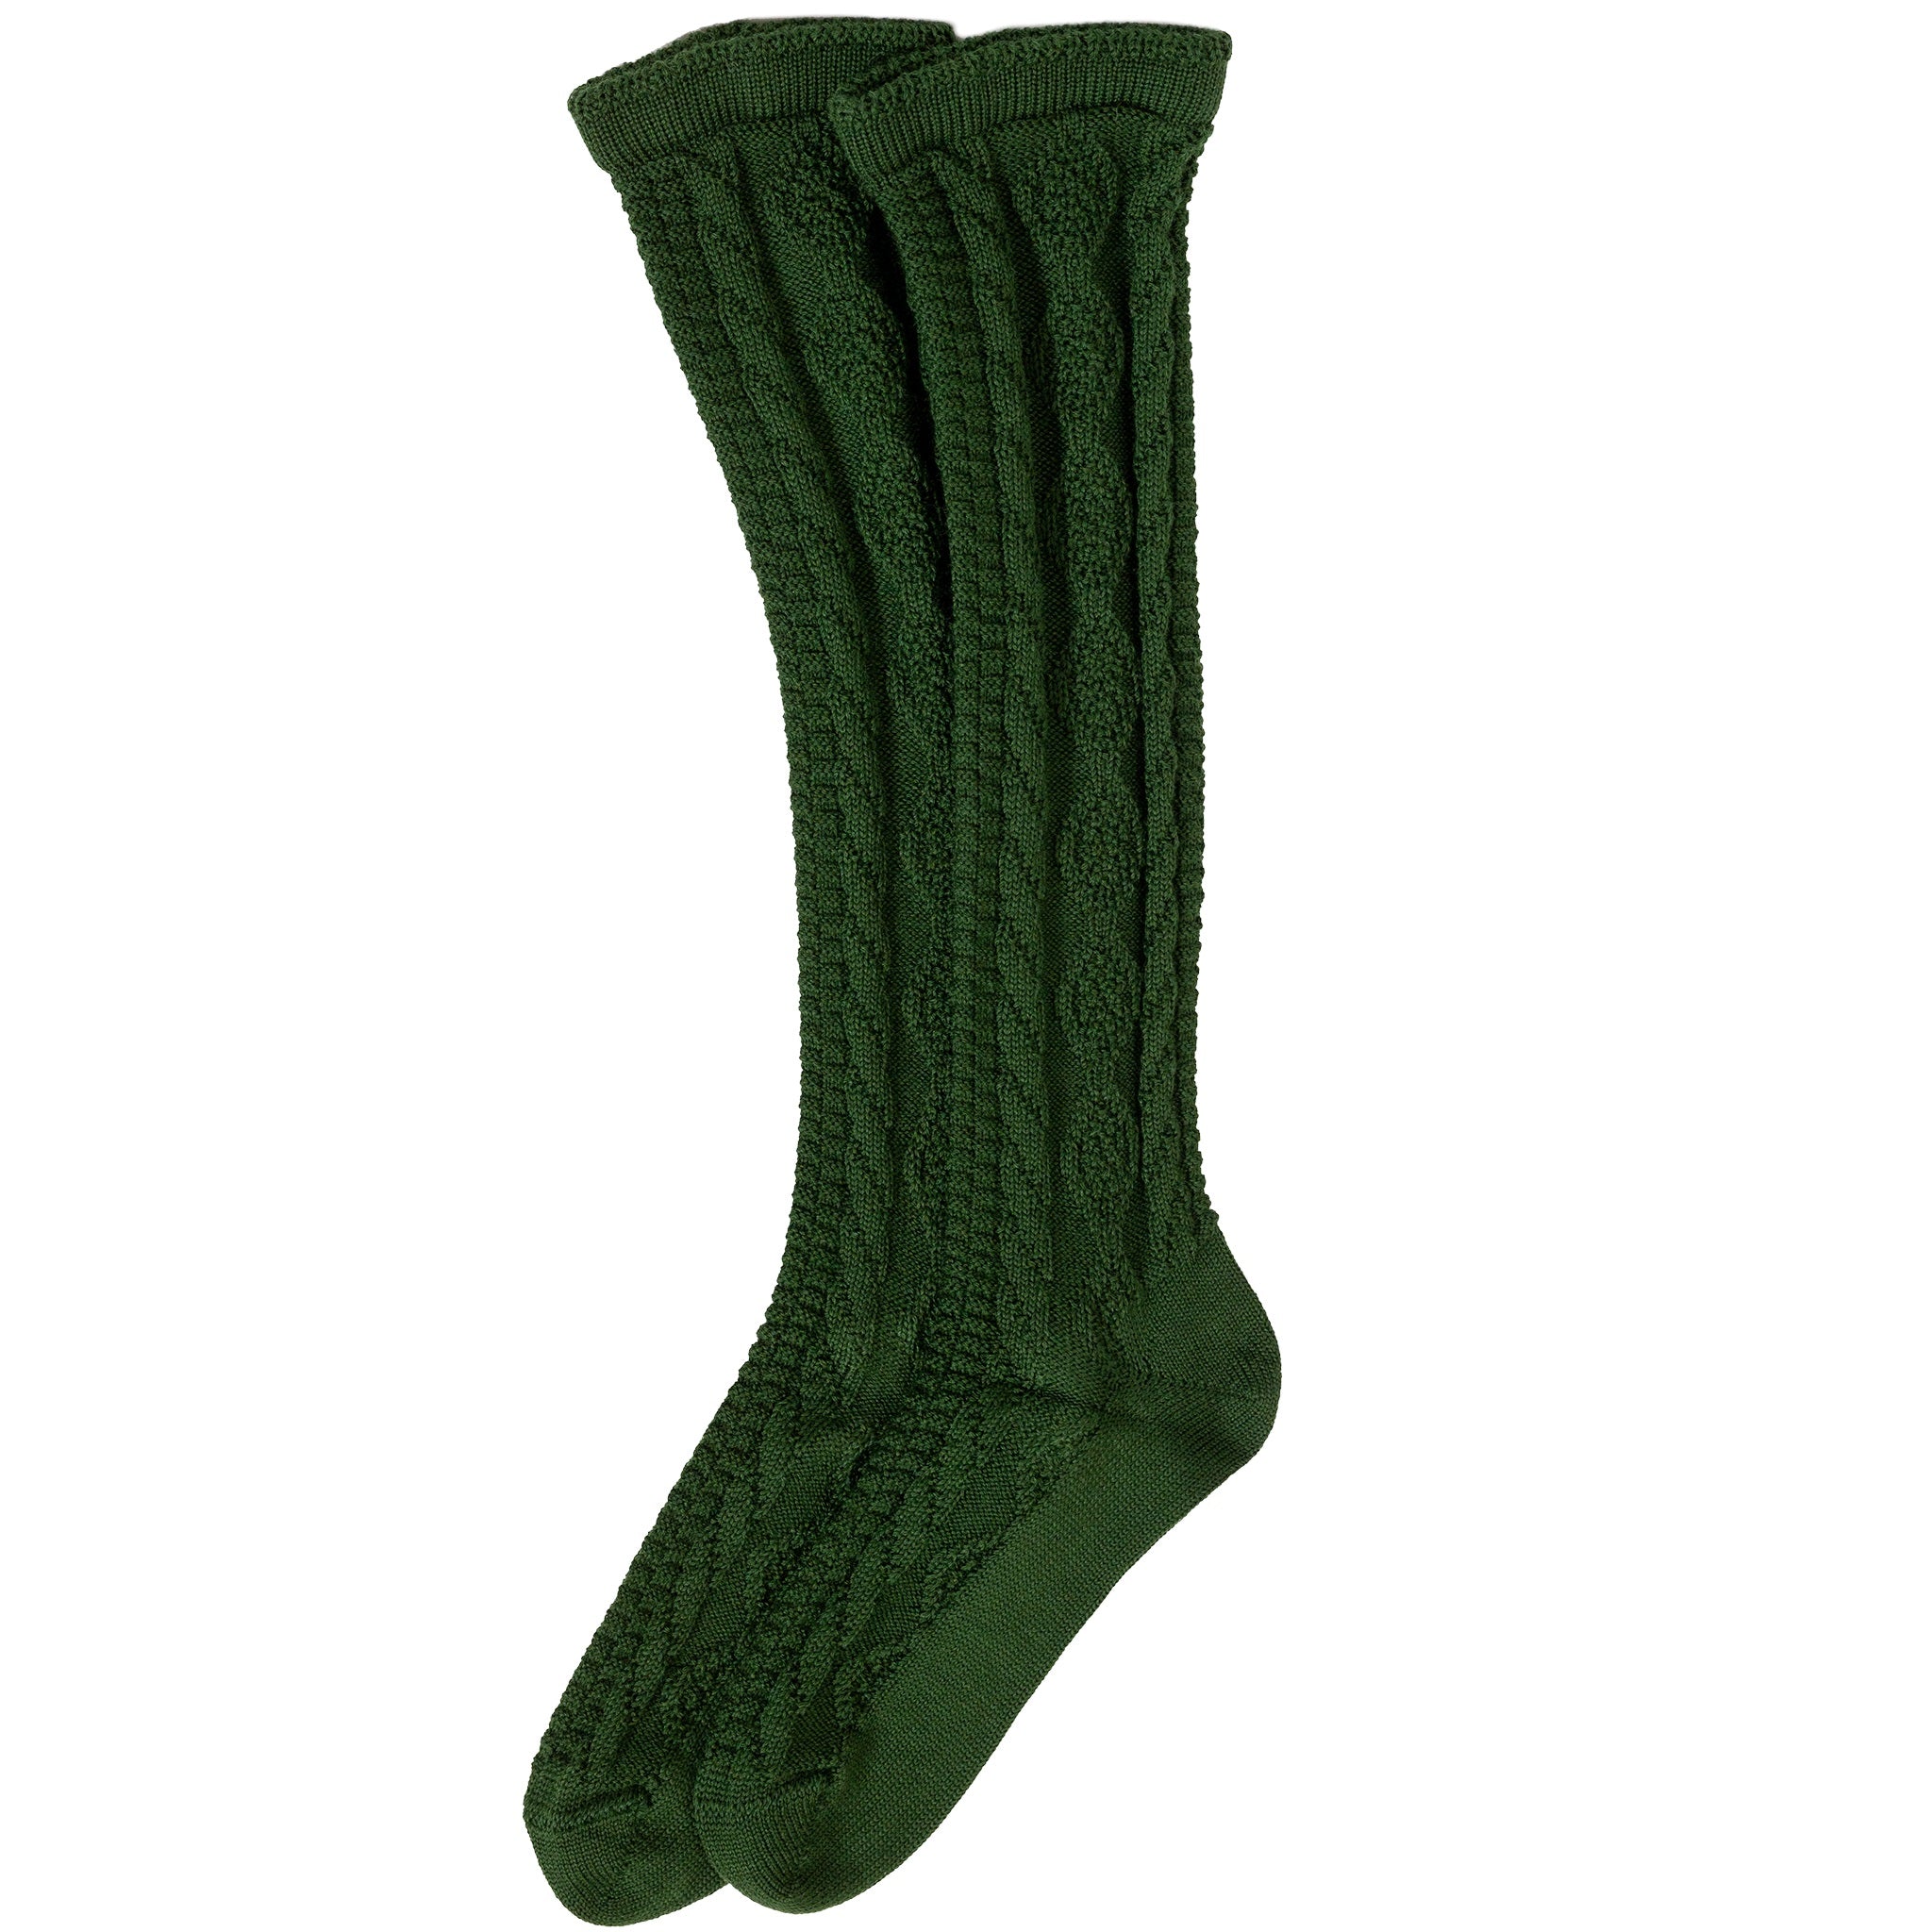 Herren Stutzen Socken Grün